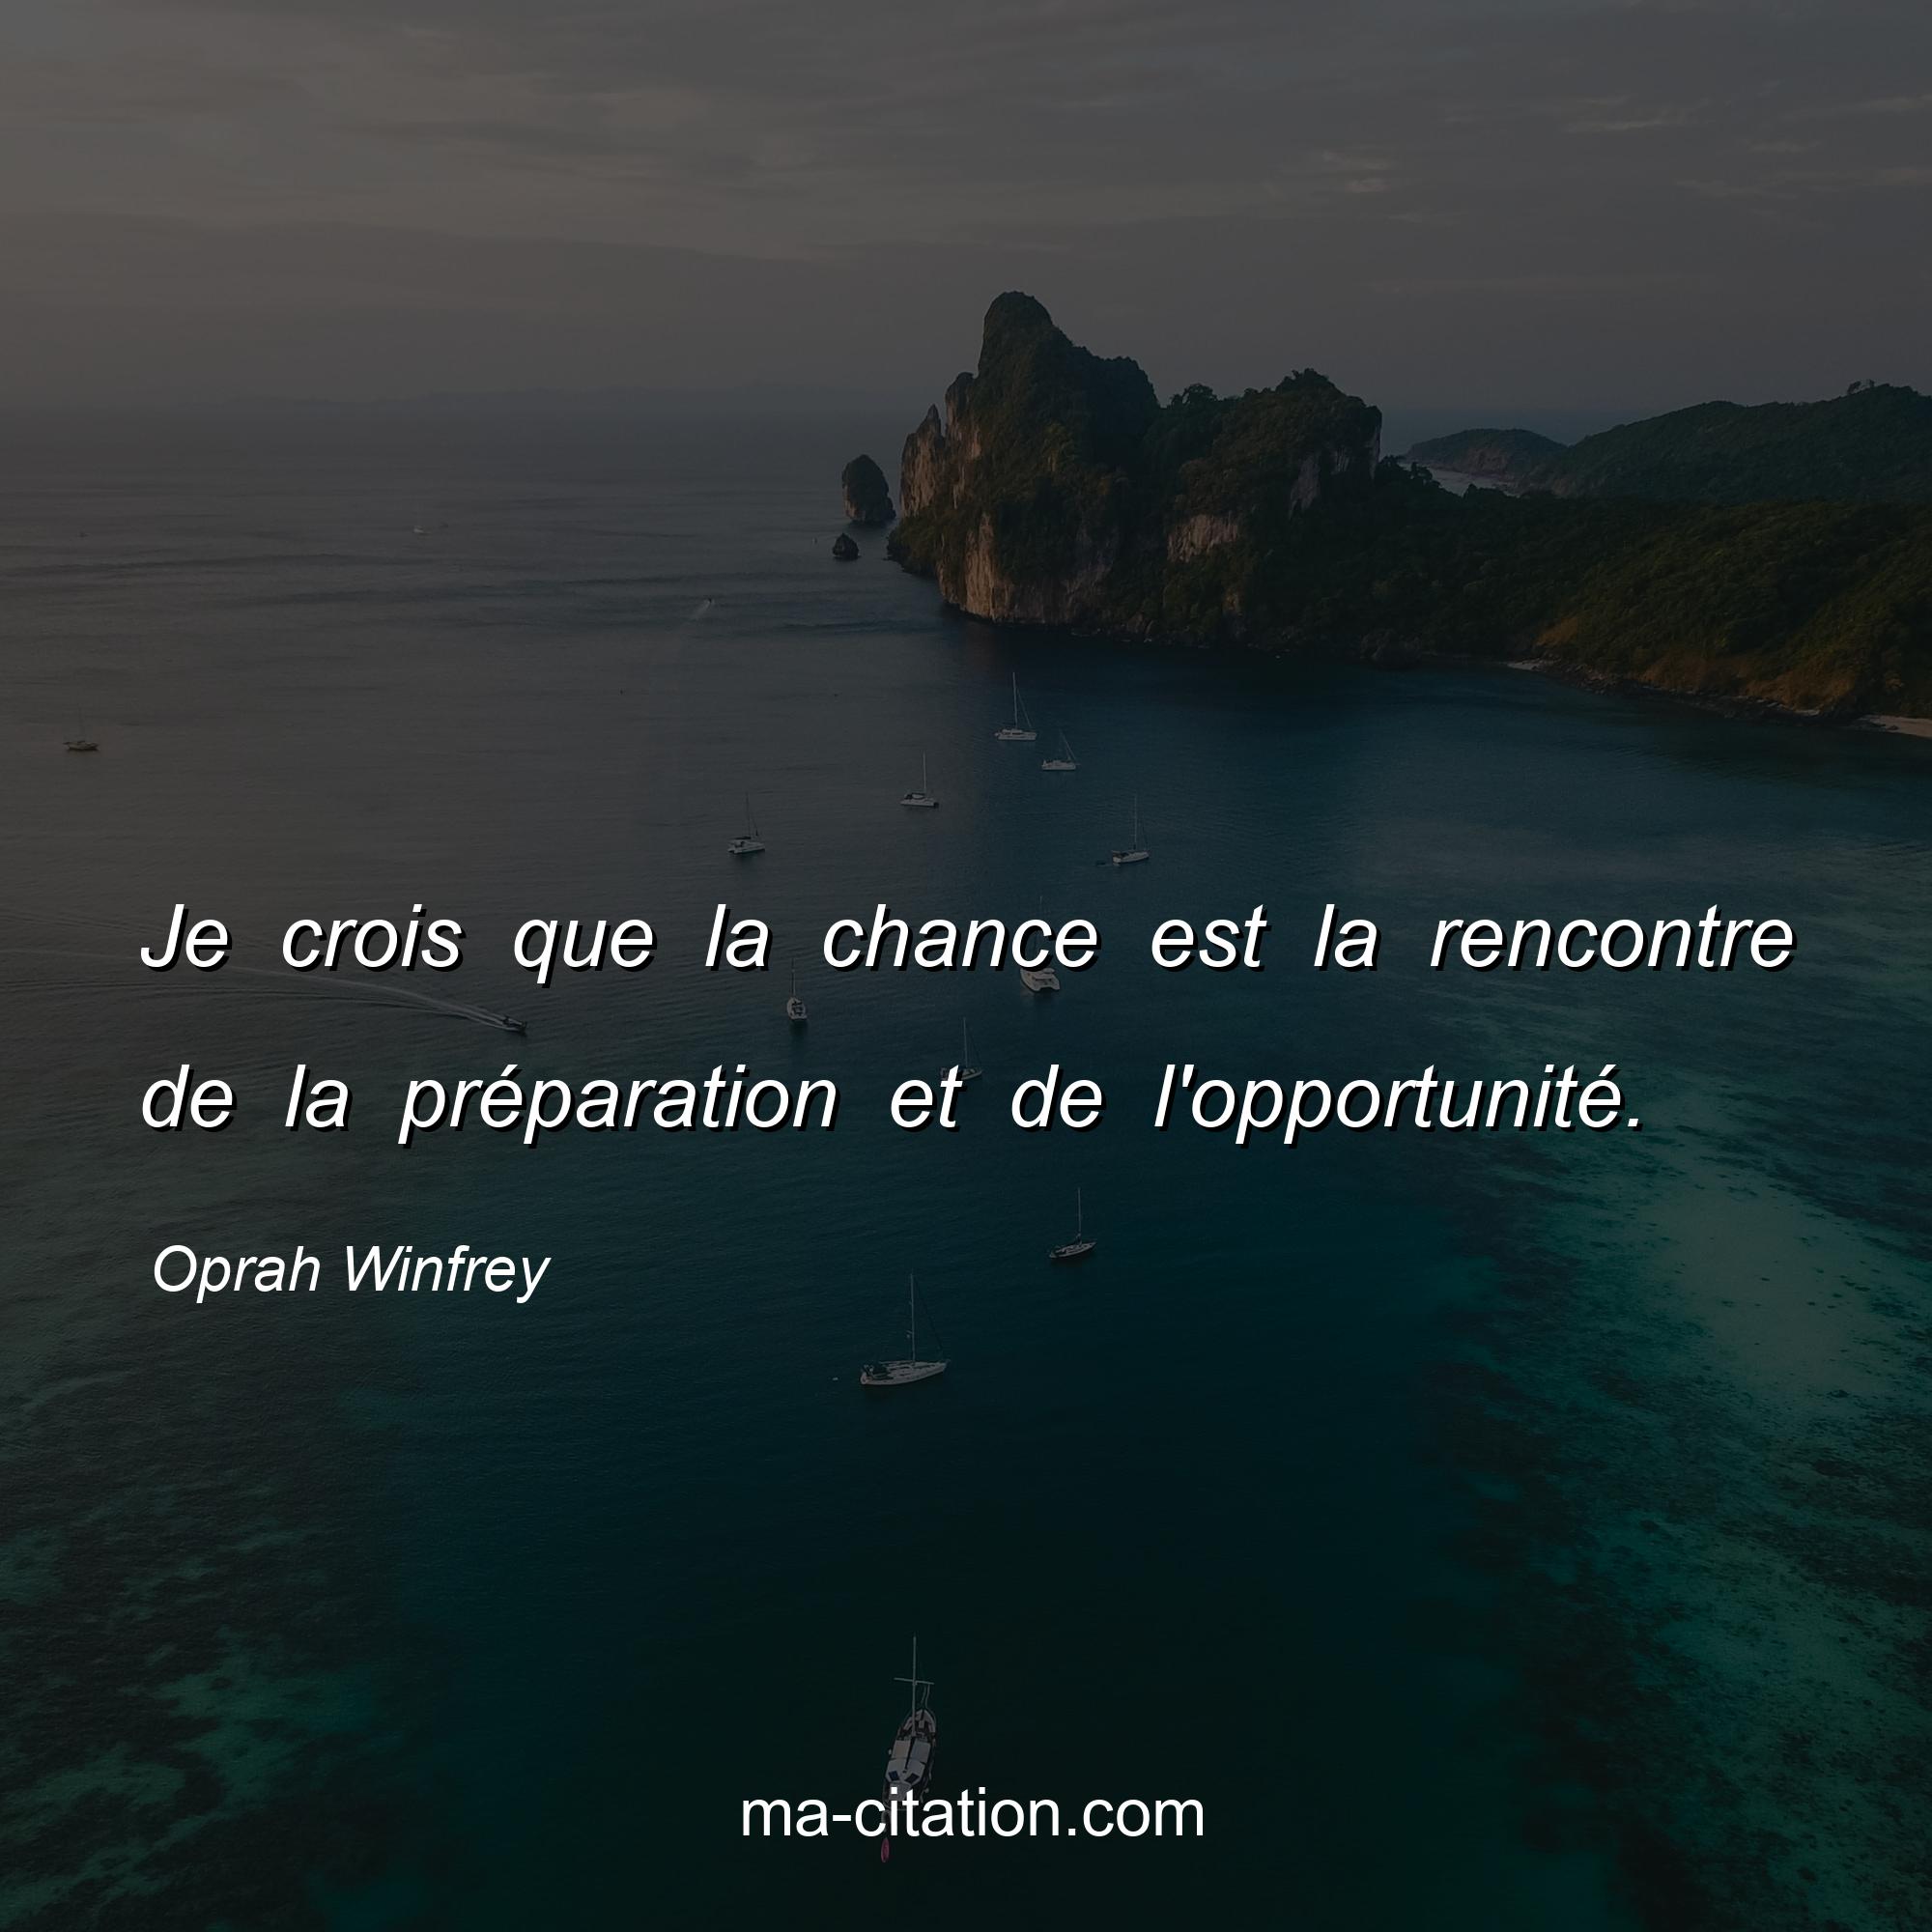 Oprah Winfrey : Je crois que la chance est la rencontre de la préparation et de l'opportunité.